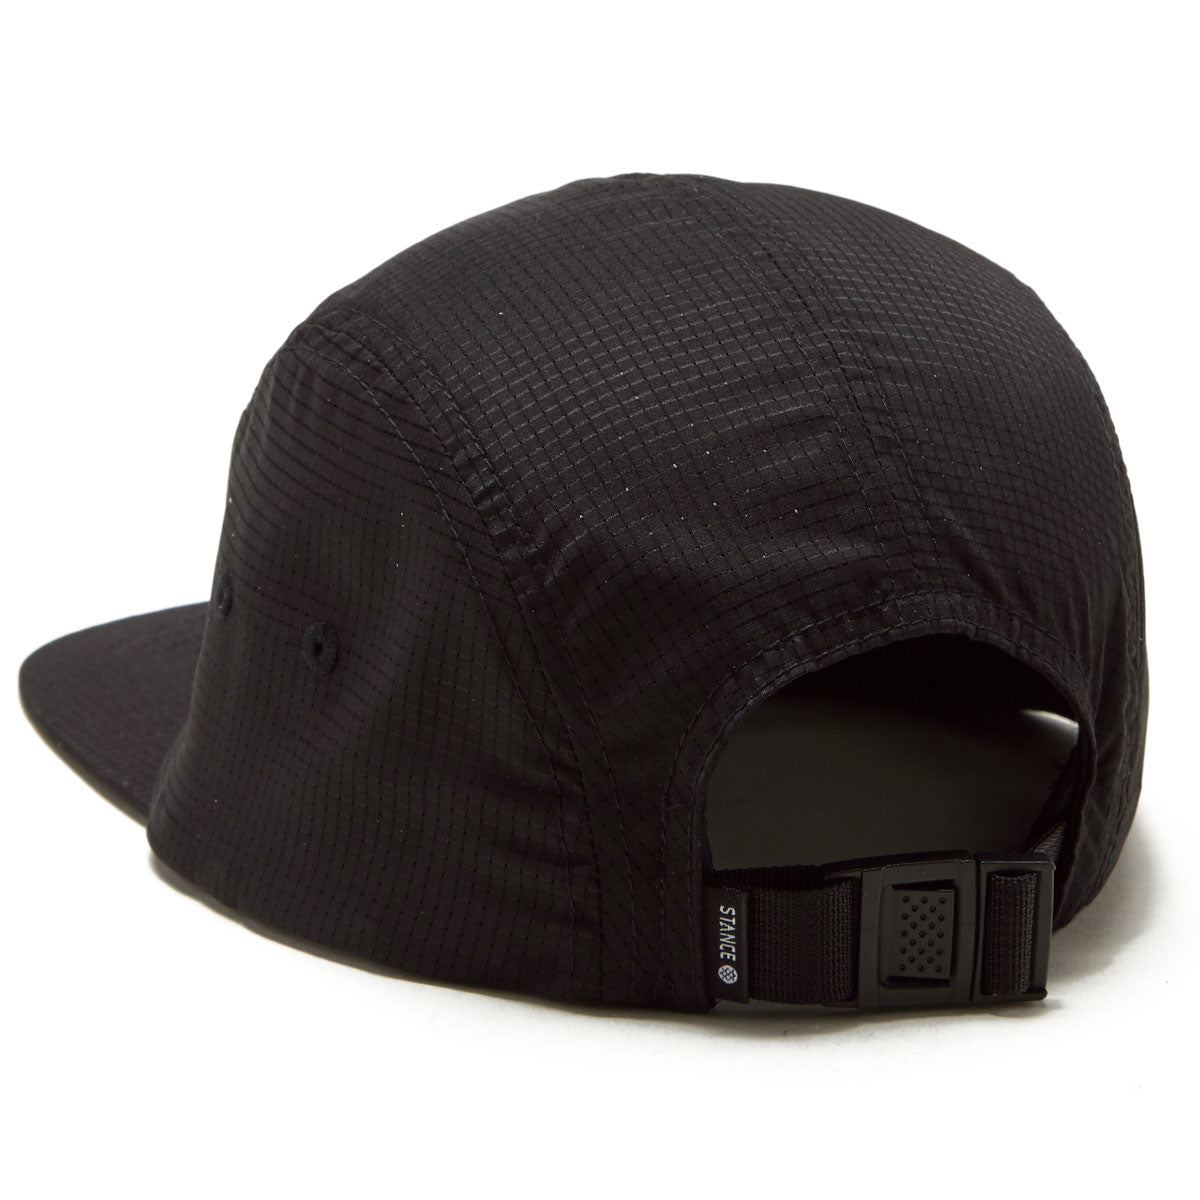 Stance Kinetic Adjustable Hat - Black image 2